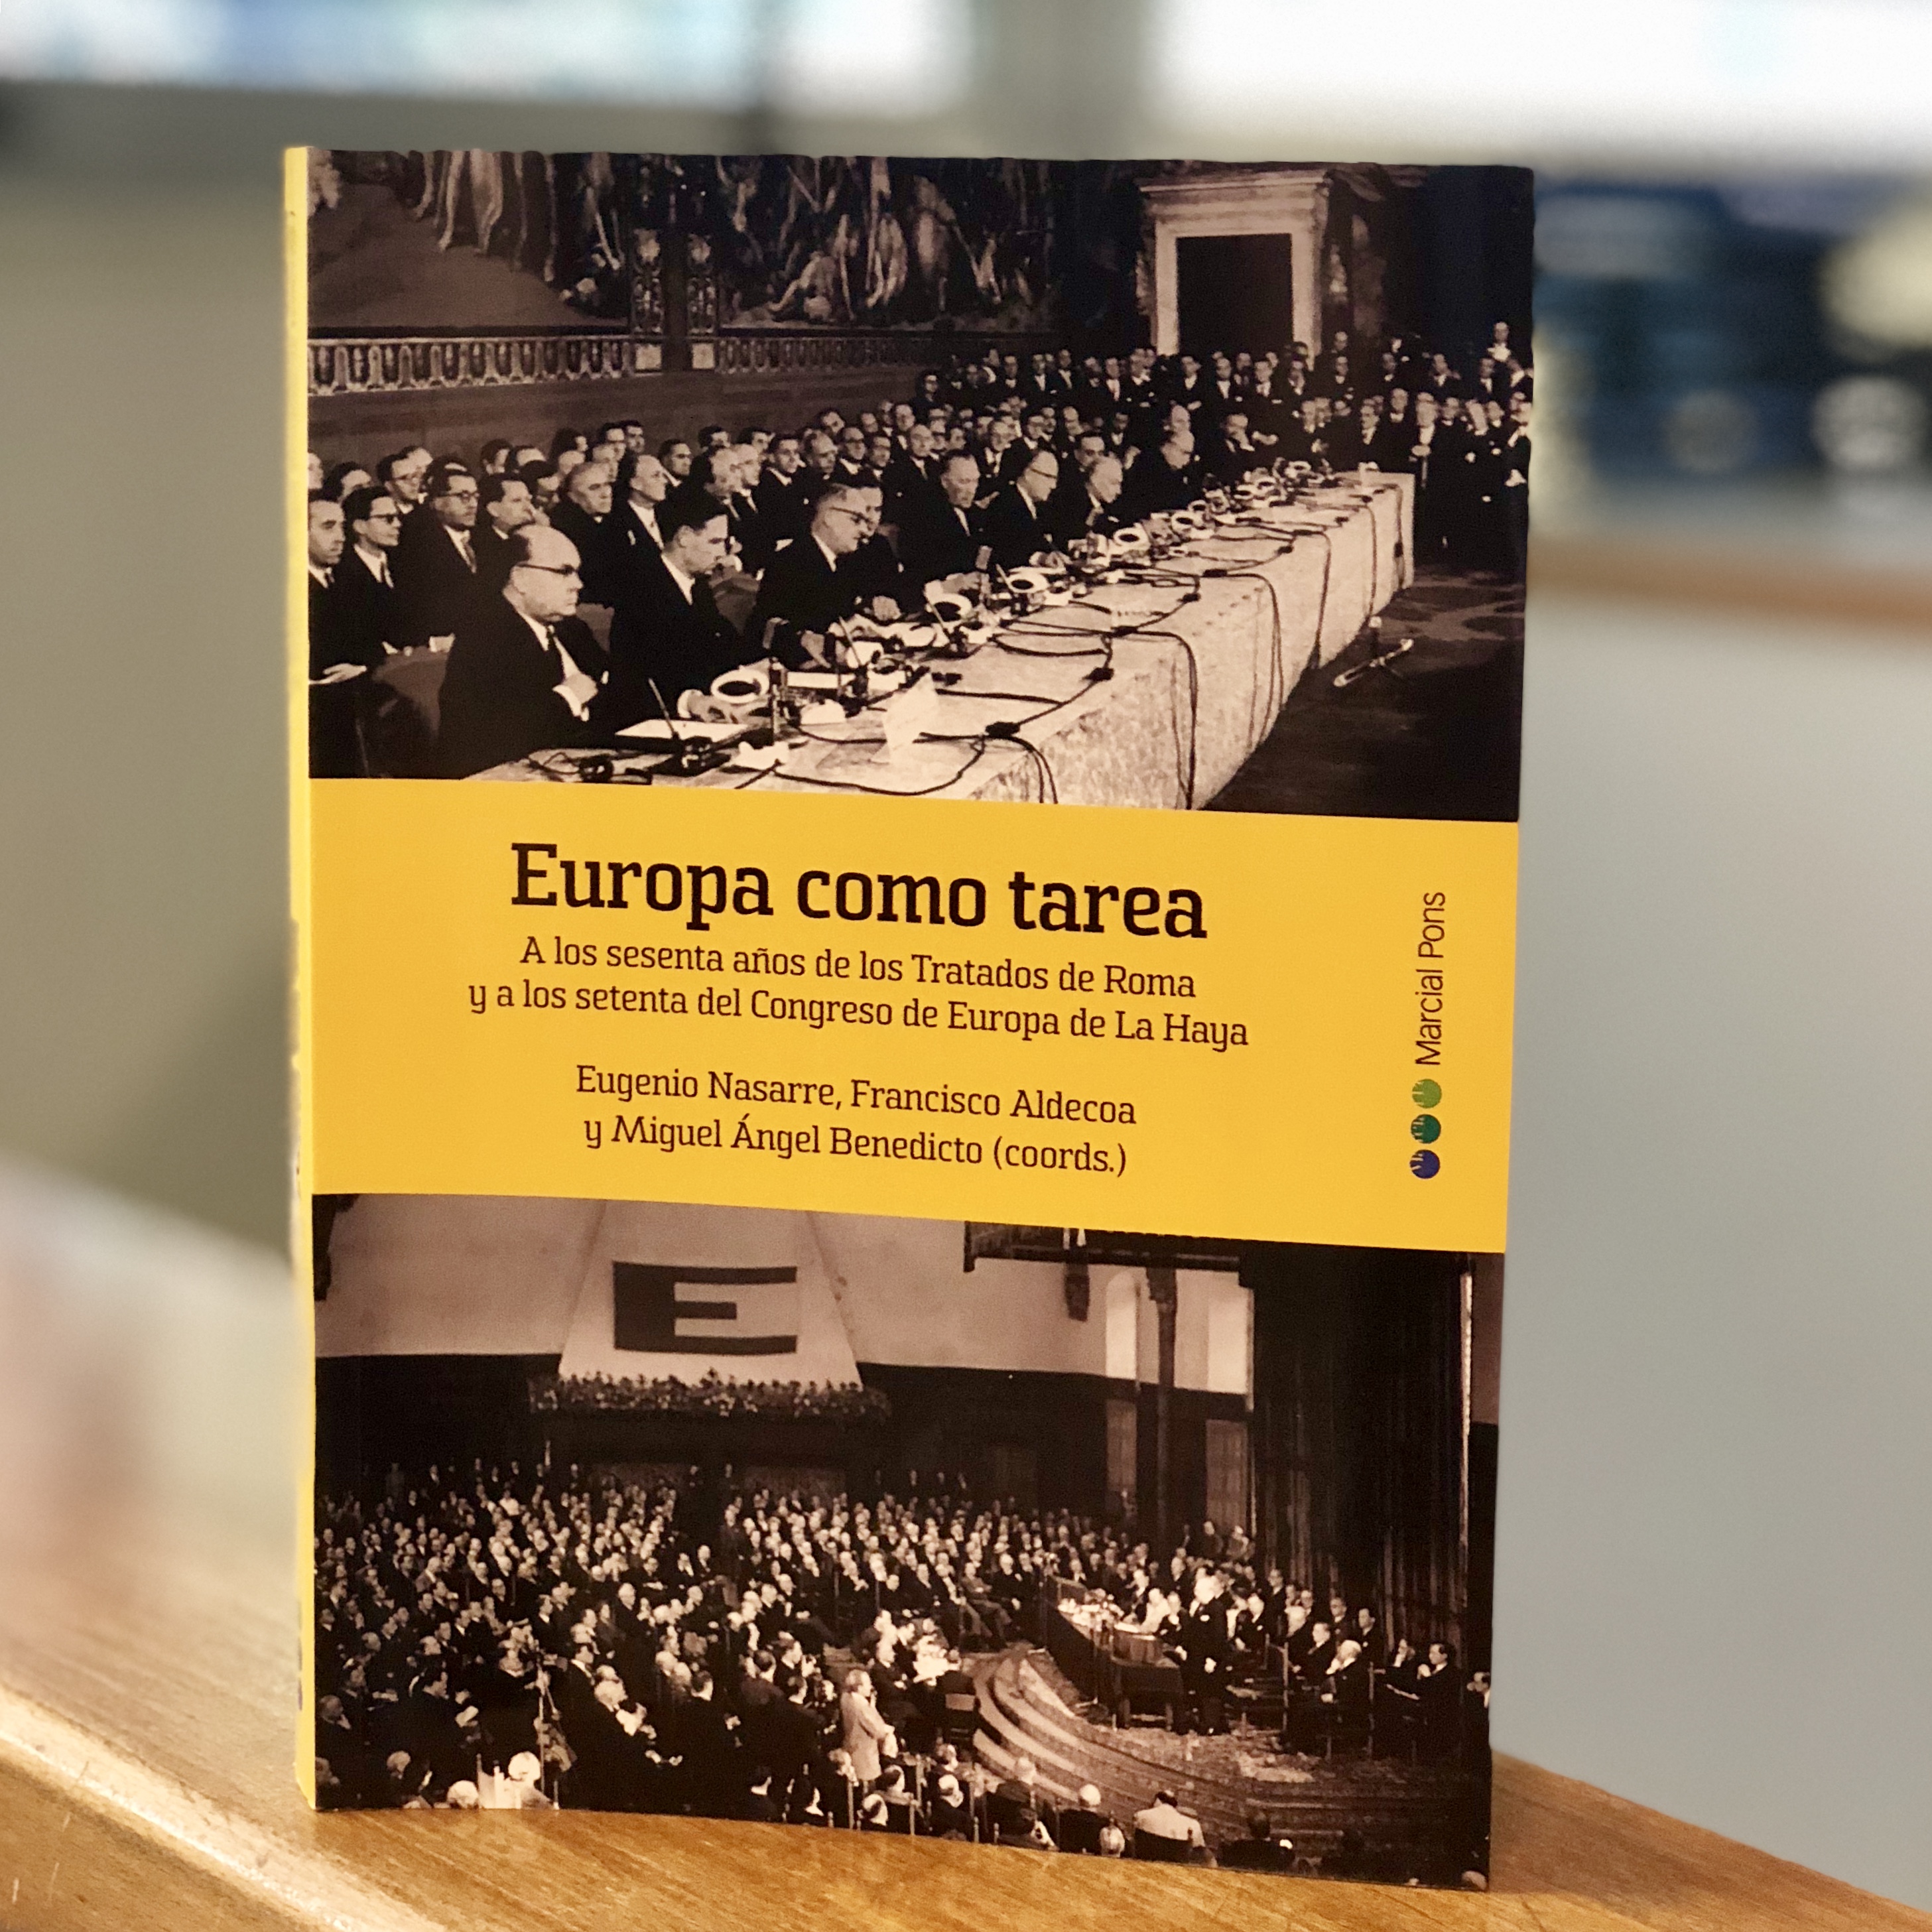 Debat: EUROPA, FITES I PROPOSTES, amb motiu de la presentació del llibre "Europa como tarea". 328